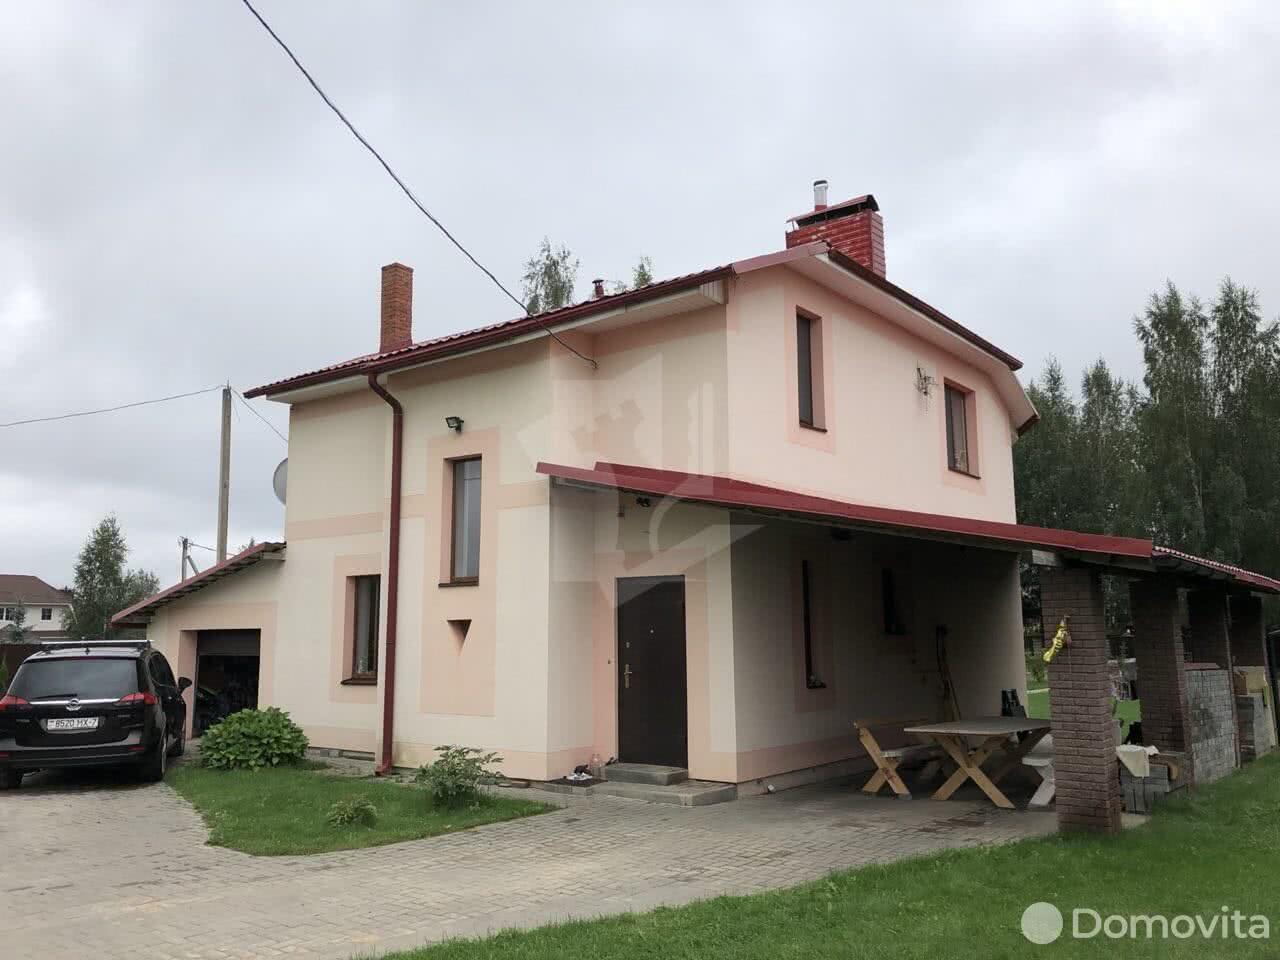 дом, Колодищи, ул. Энтузиастов, стоимость аренды 3 590 р./мес.